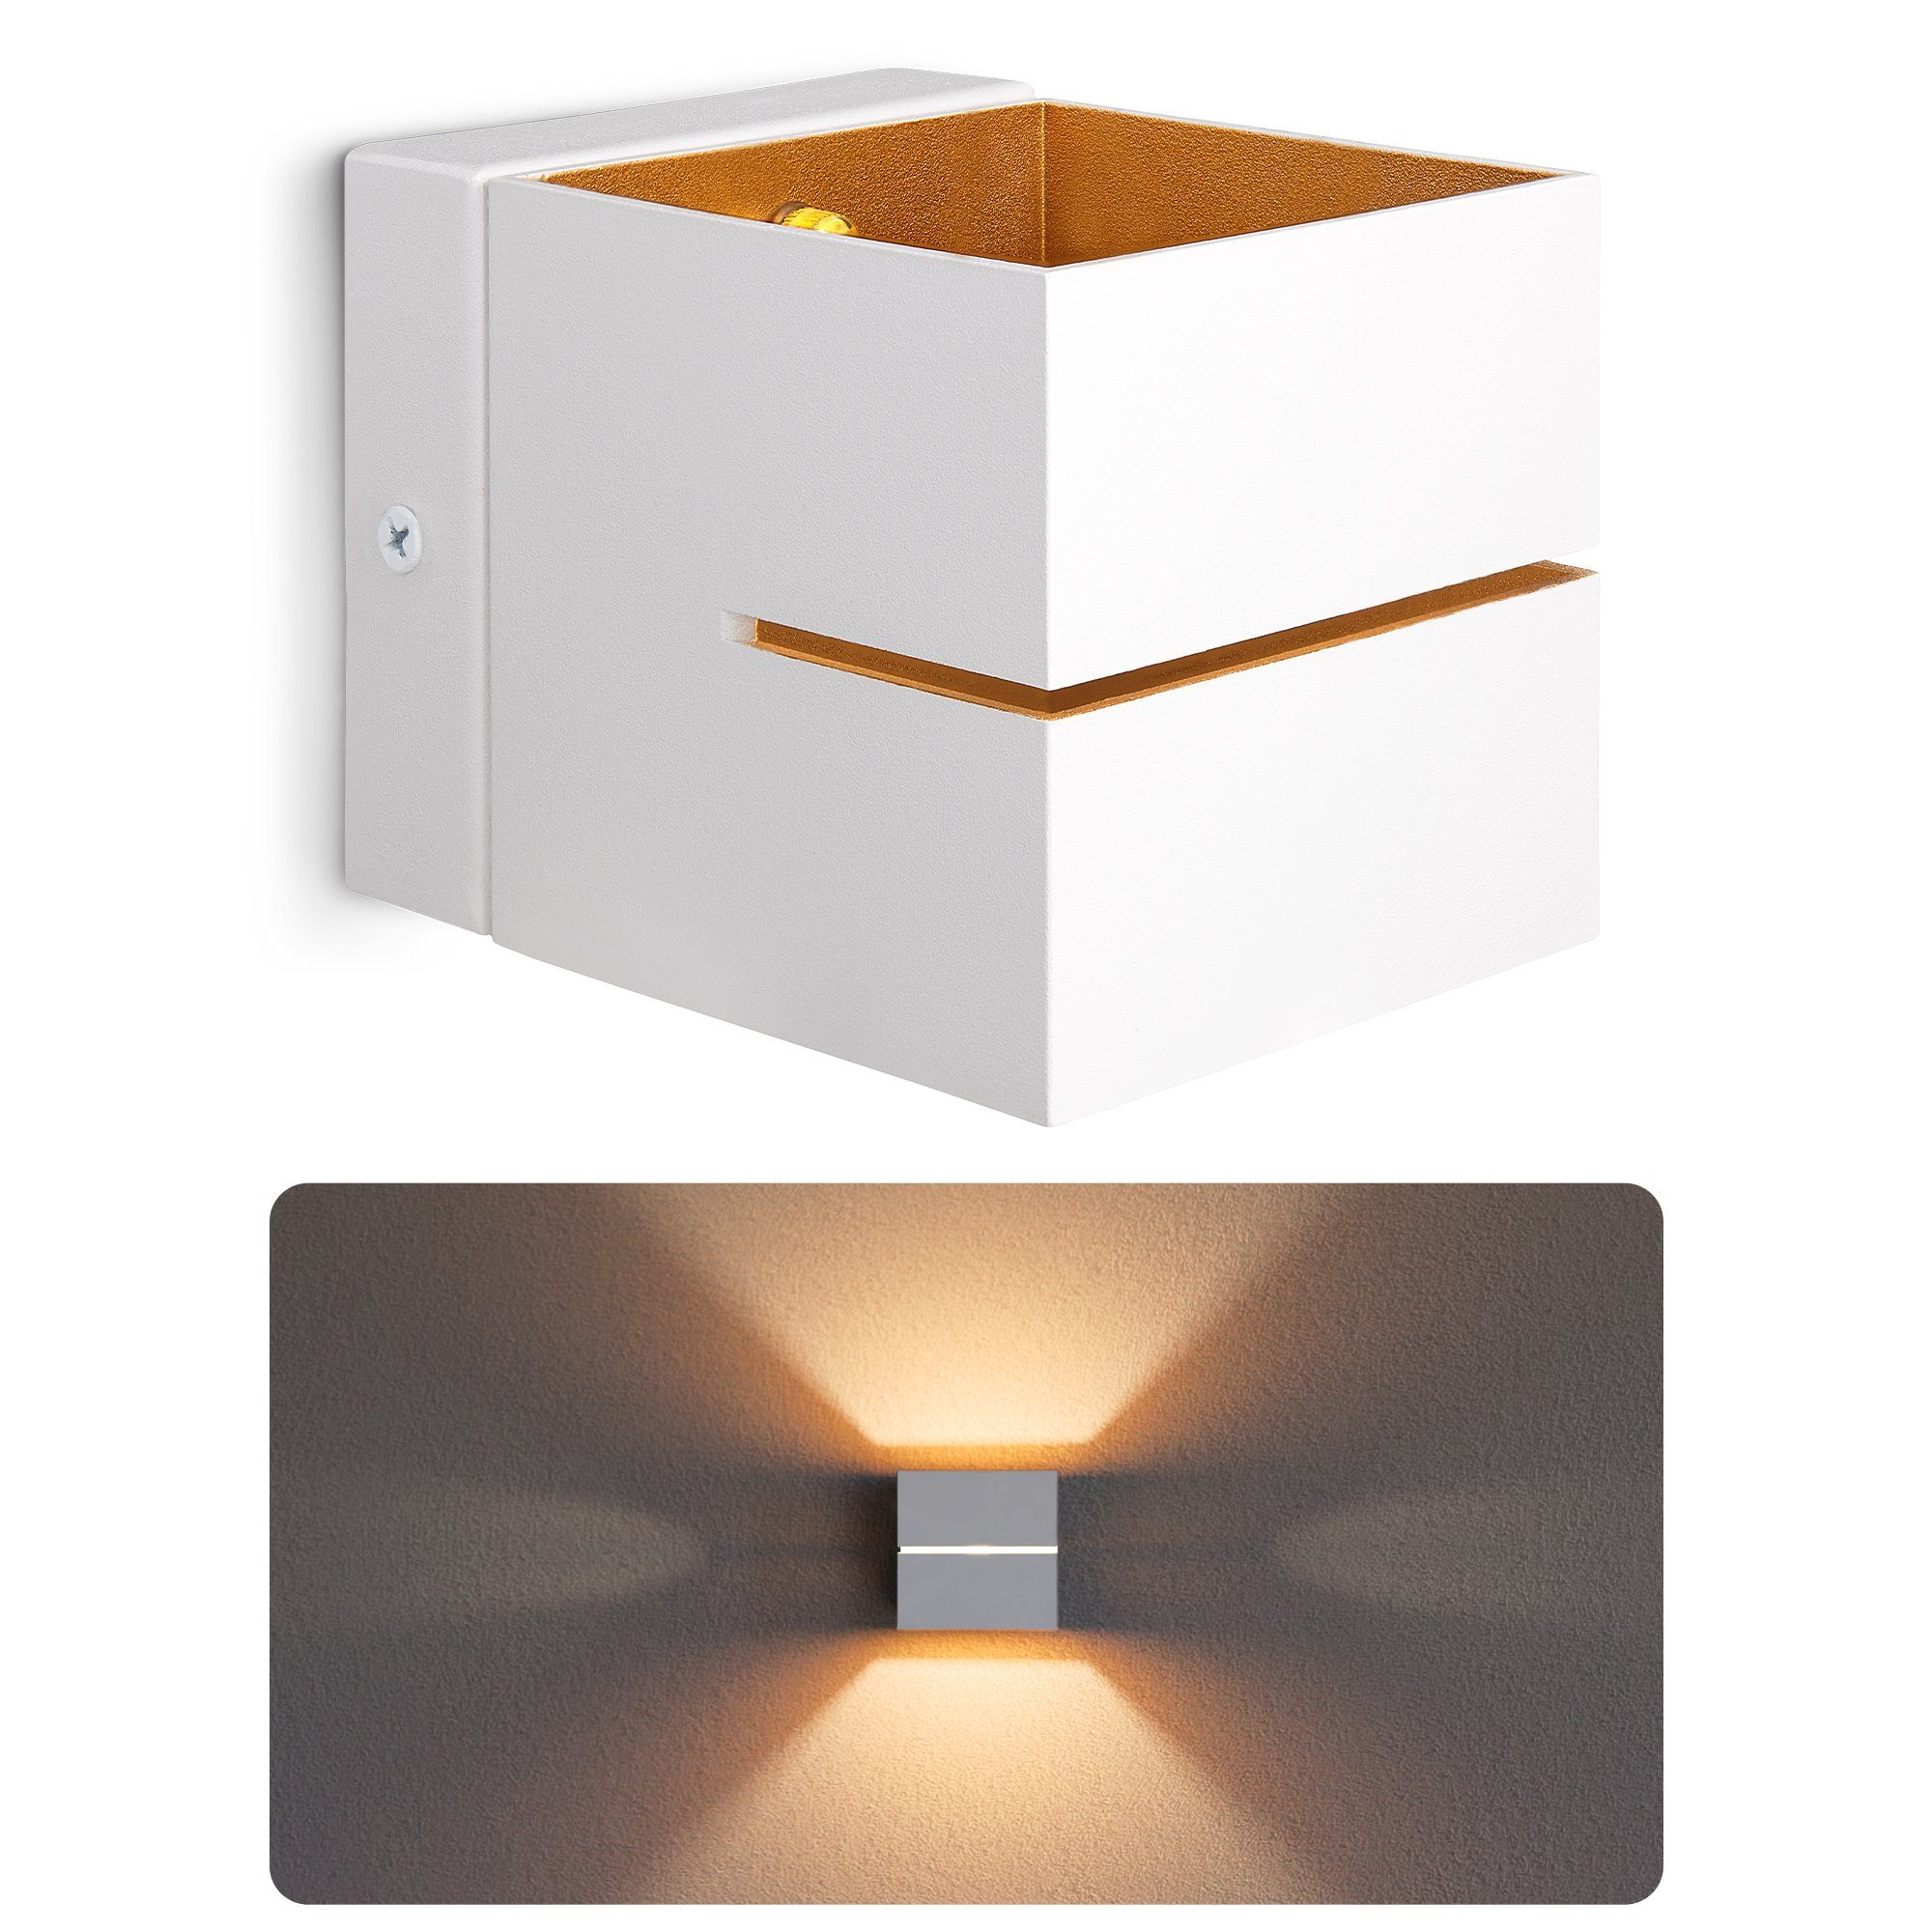 SSC-LUXon LED Wandleuchte KOURA Up Down Wandlampe weiß gold Lichtspalt mit G9 LED 2W, Warmweiß